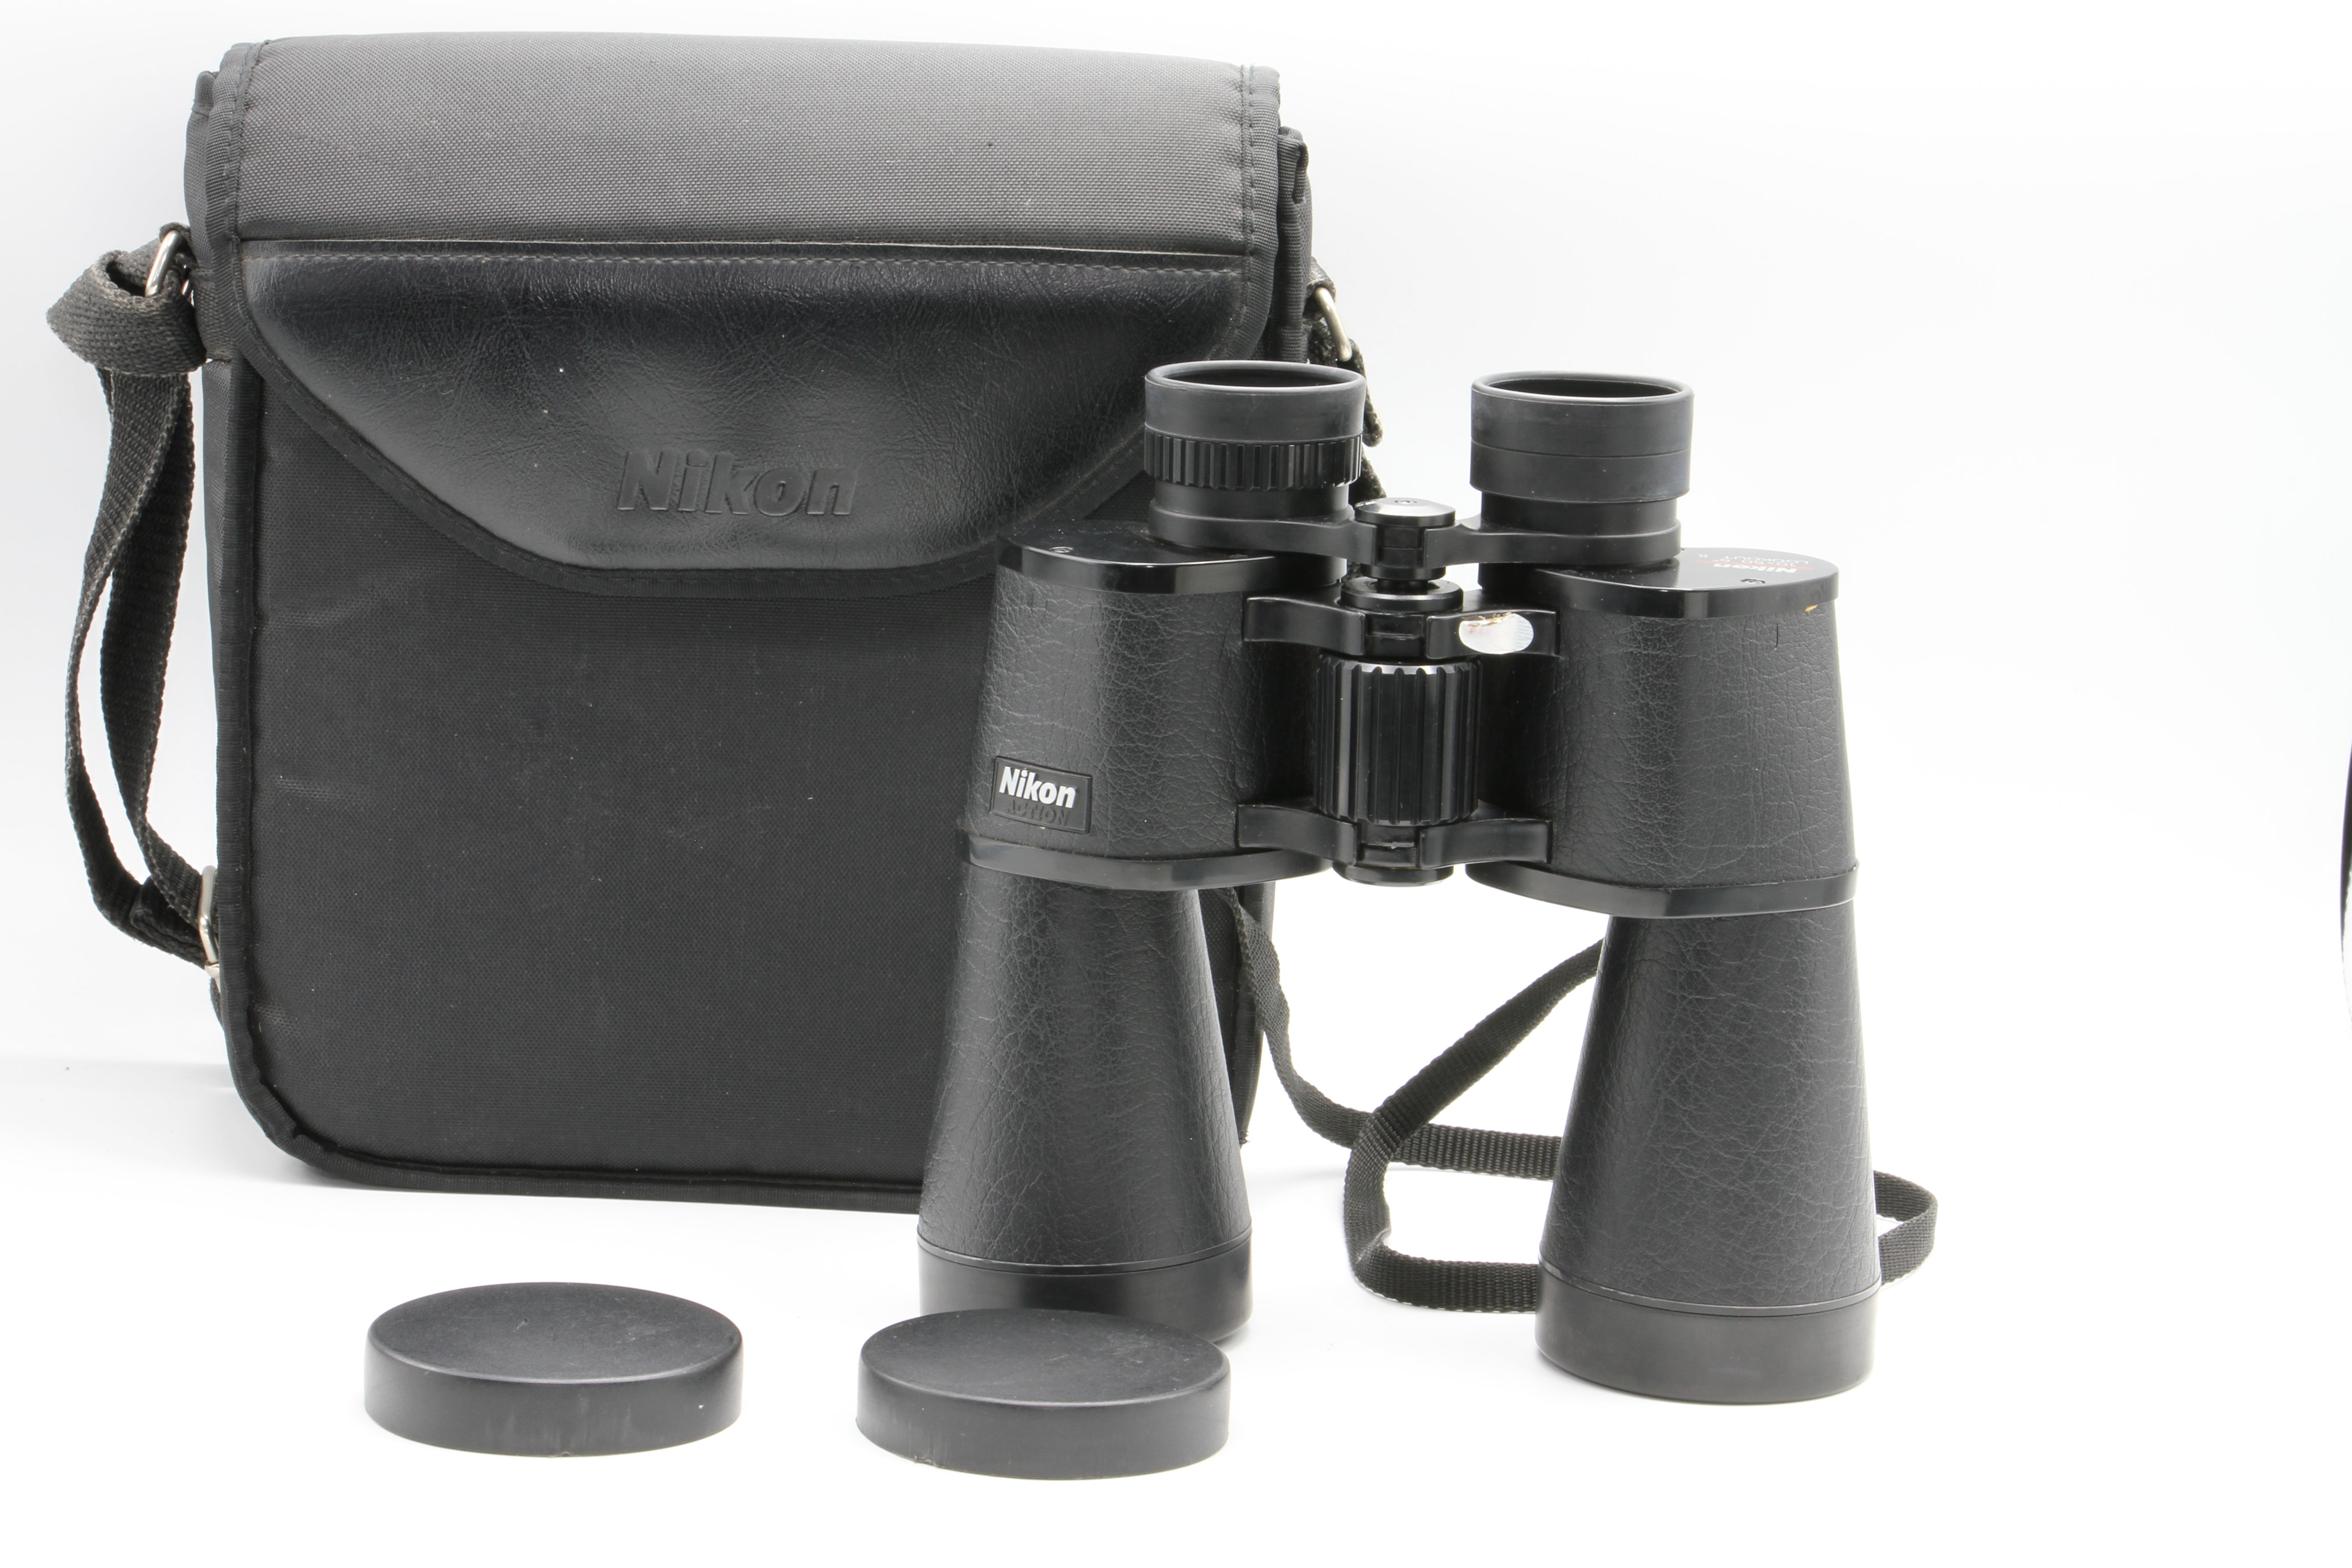 II PARTS 10x50 Nikon OR USED Binoculars REPAIR for Lookout